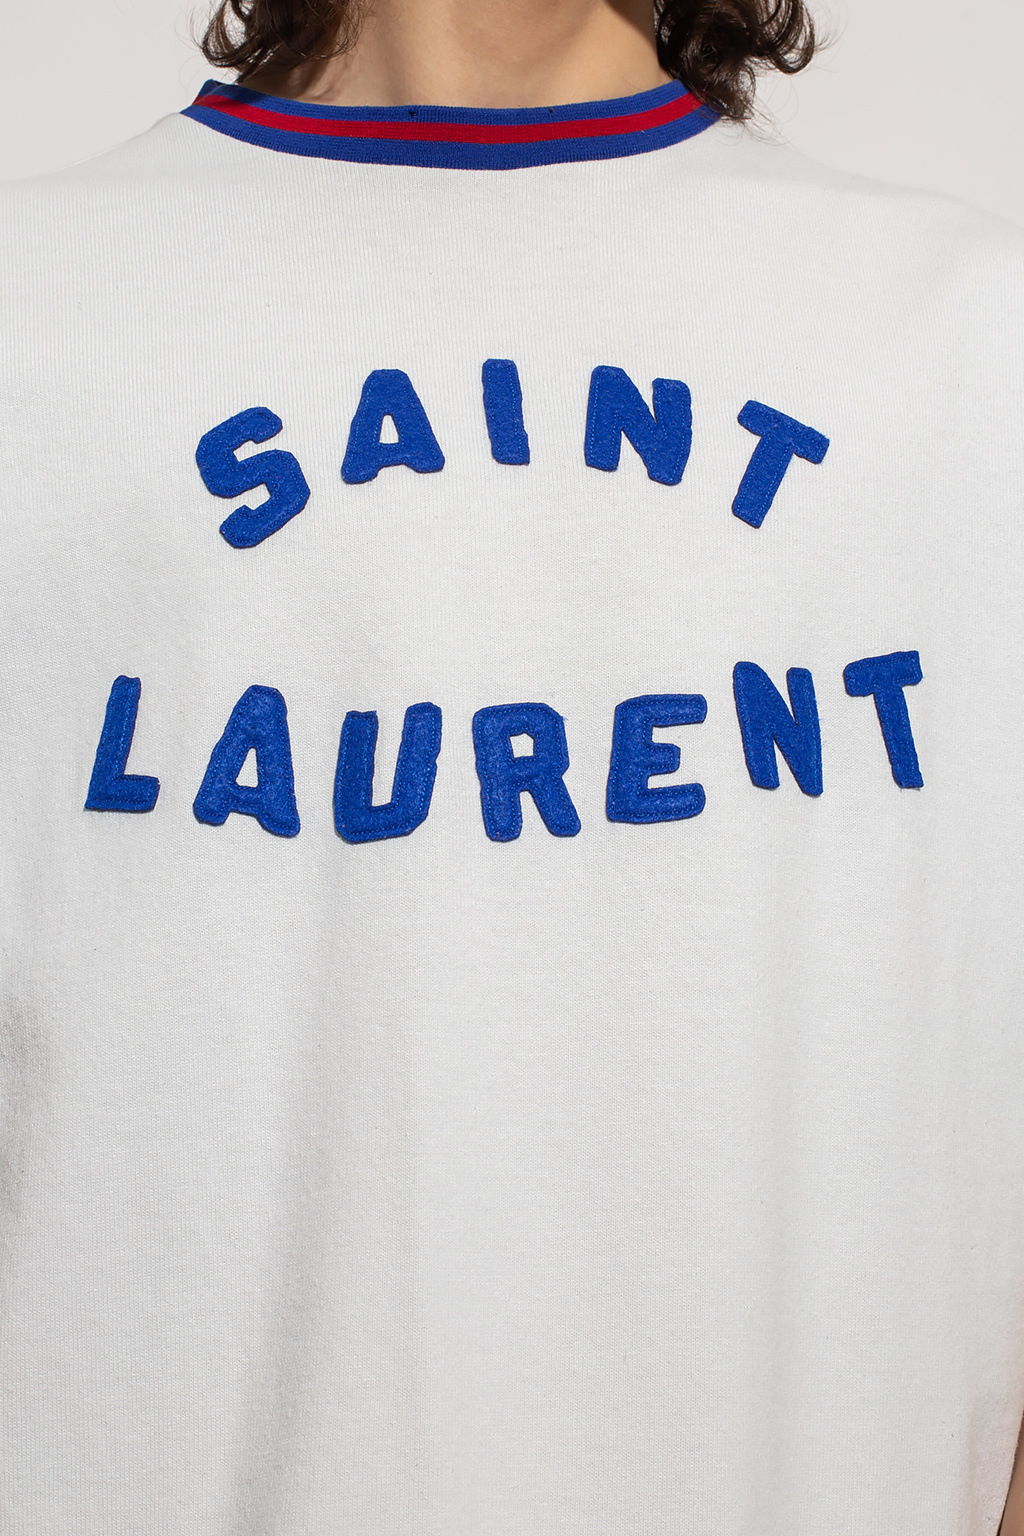 Saint Laurent Saint Laurent x Peanuts Snoopy-nudes sweatshirt